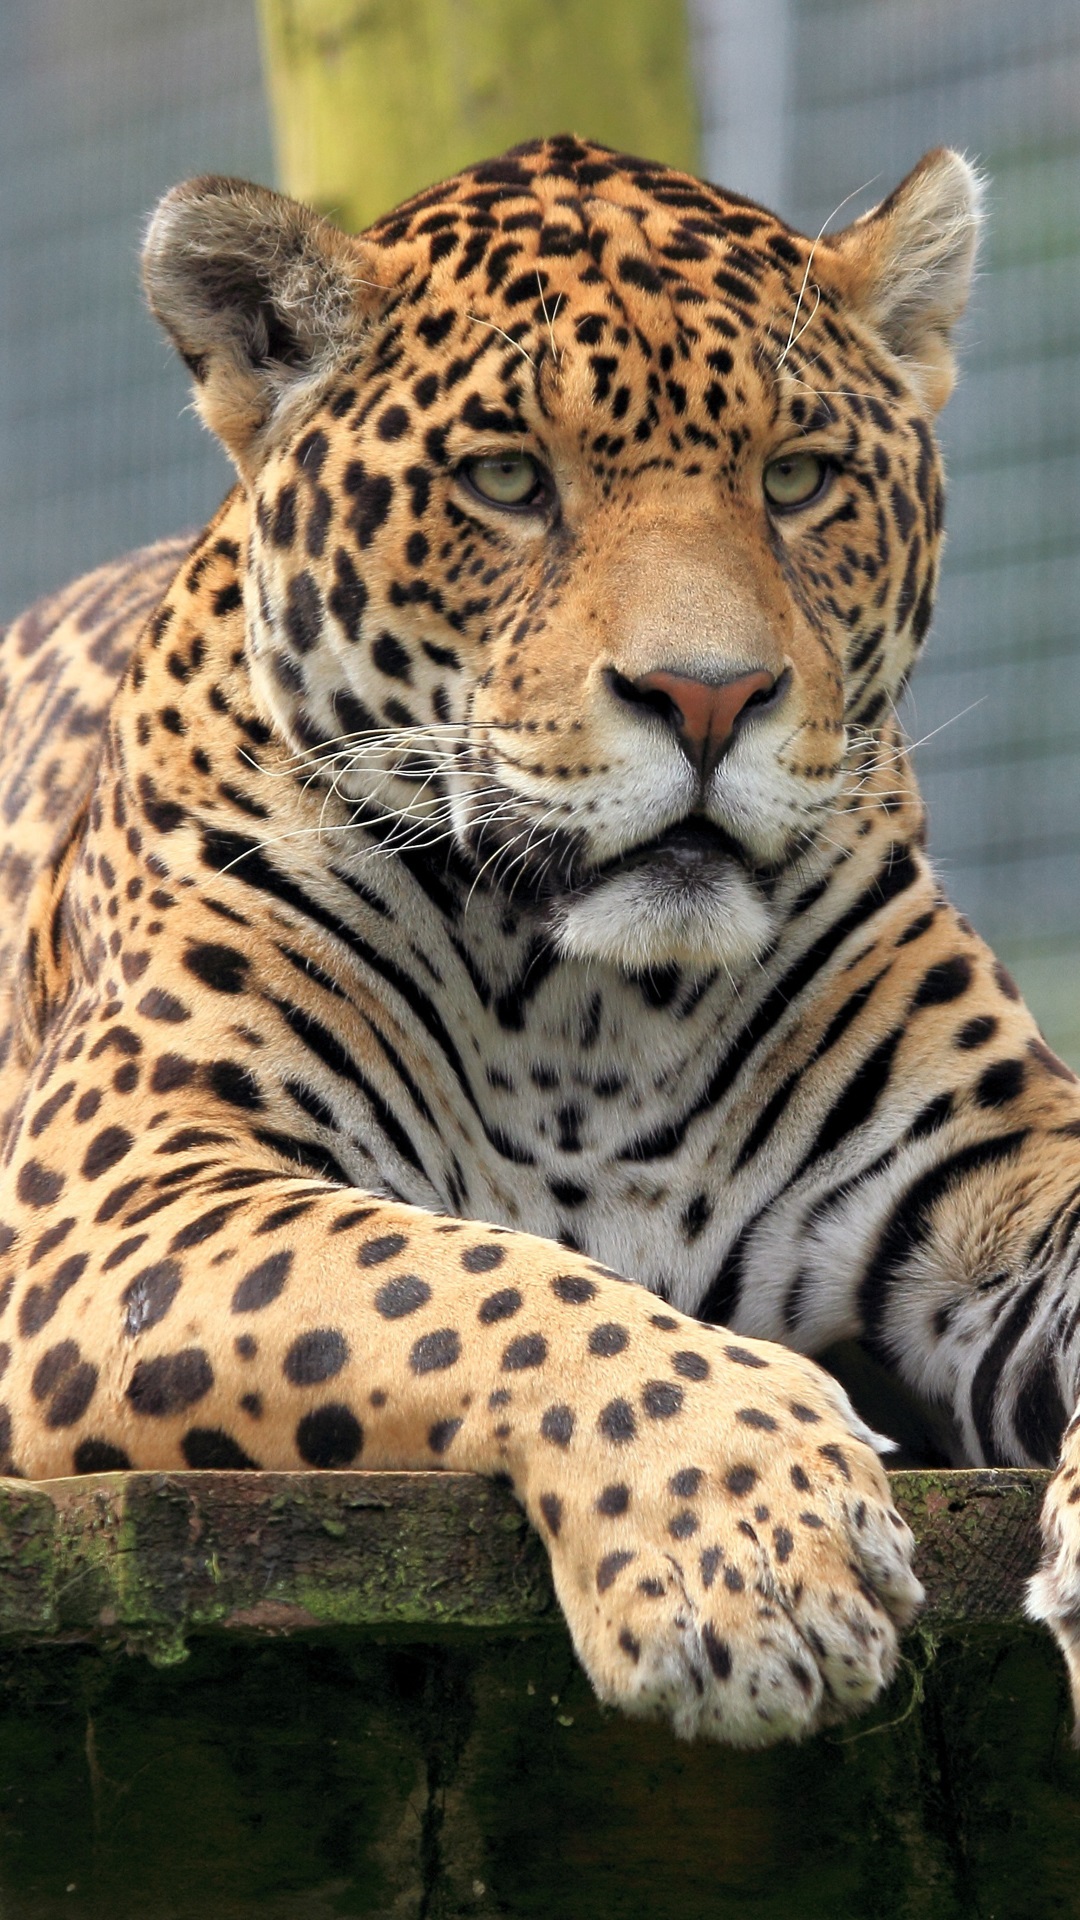 jaguar iphone wallpaper,terrestrial animal,mammal,vertebrate,wildlife,jaguar